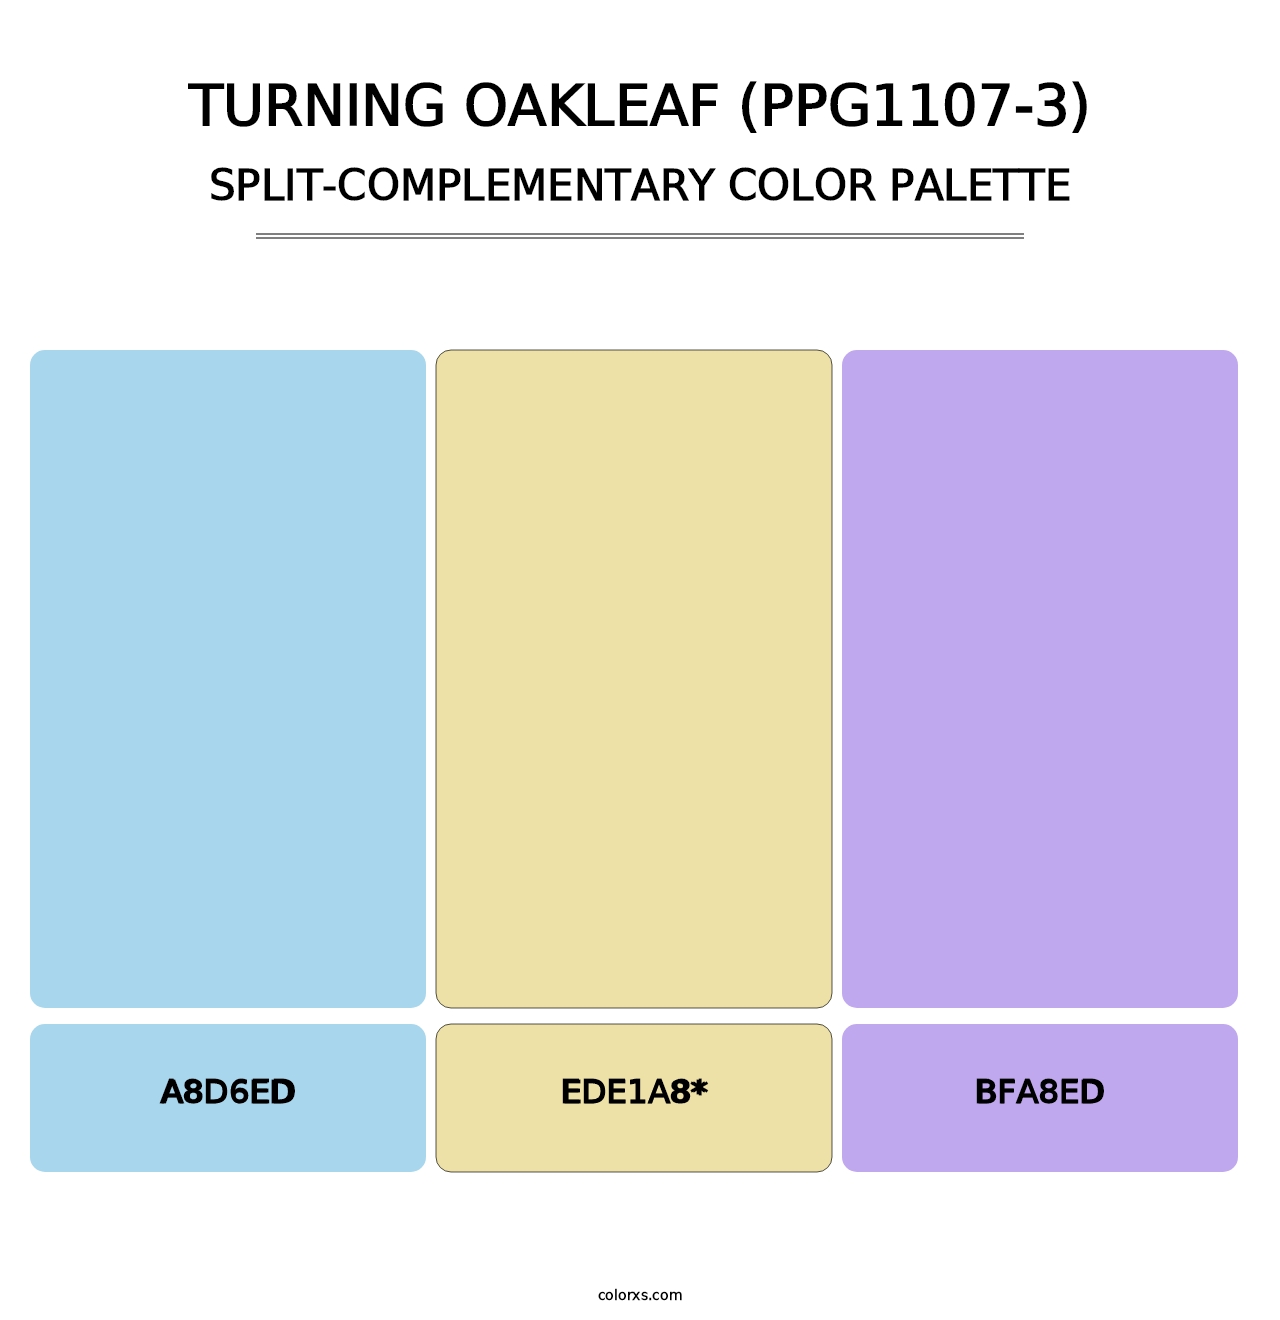 Turning Oakleaf (PPG1107-3) - Split-Complementary Color Palette